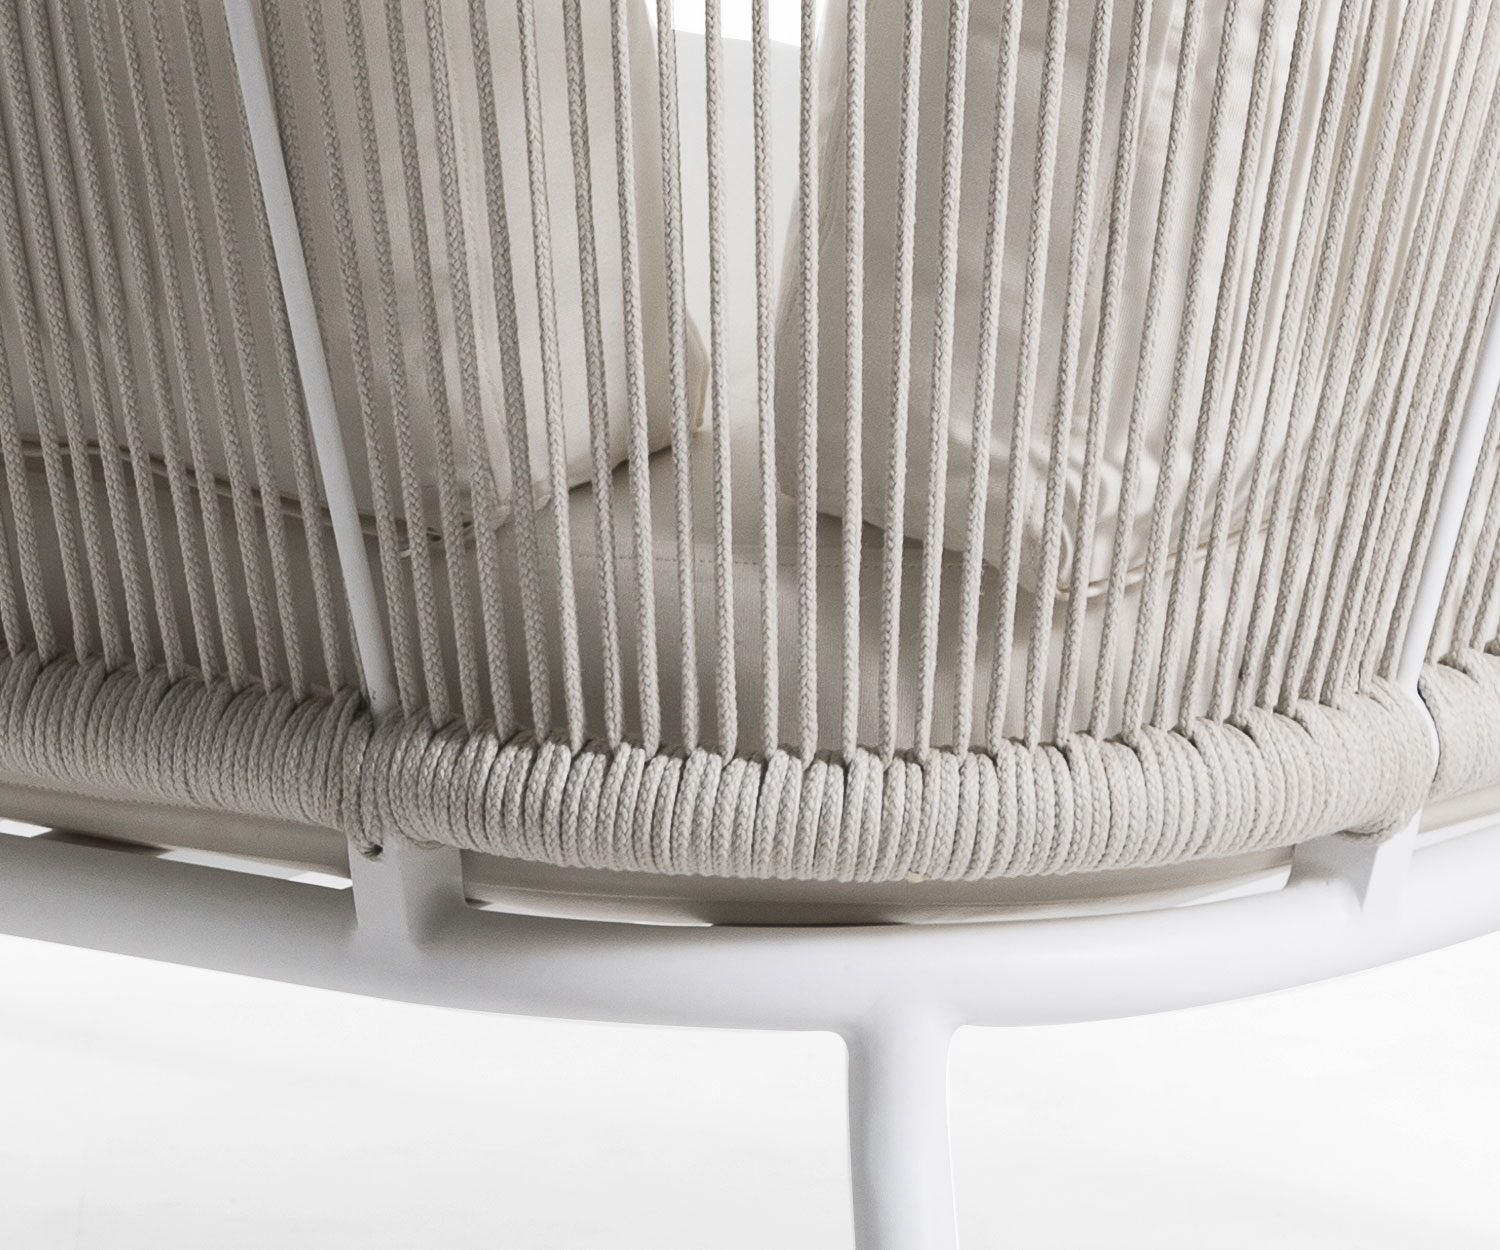 Exklusives Oasiq Yland 2er Design Sofa mit Rahmen aus Aluminum in Anthrazit